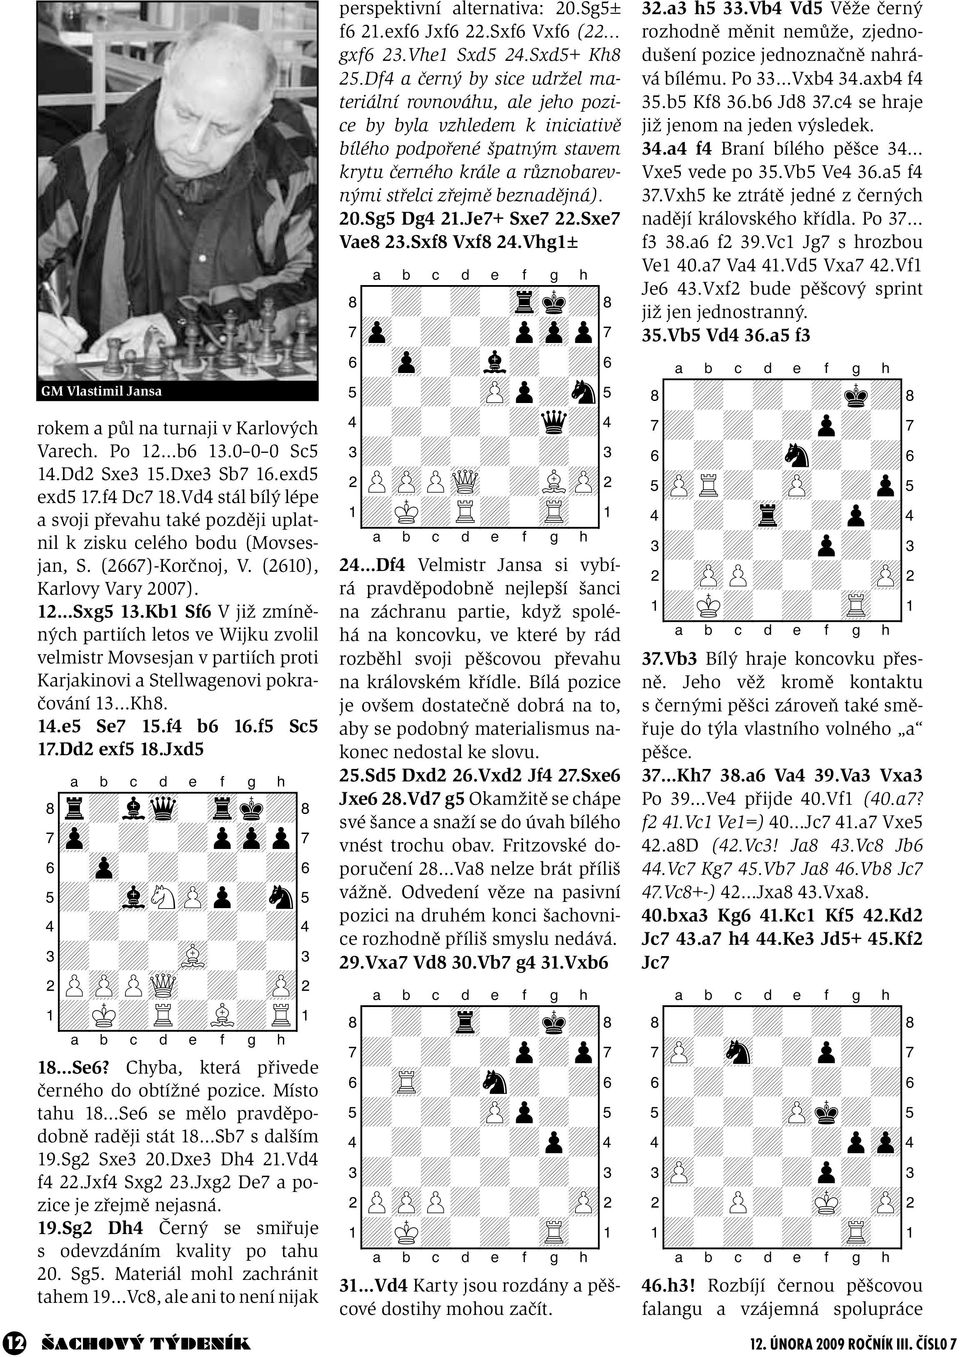 Kb1 Sf6 V již zmíněných partiích letos ve Wijku zvolil velmistr Movsesjan v partiích proti Karjakinovi a Stellwagenovi pokračování 13 Kh8. 14.e5 Se7 15.f4 b6 16.f5 Sc5 17.Dd2 exf5 18.